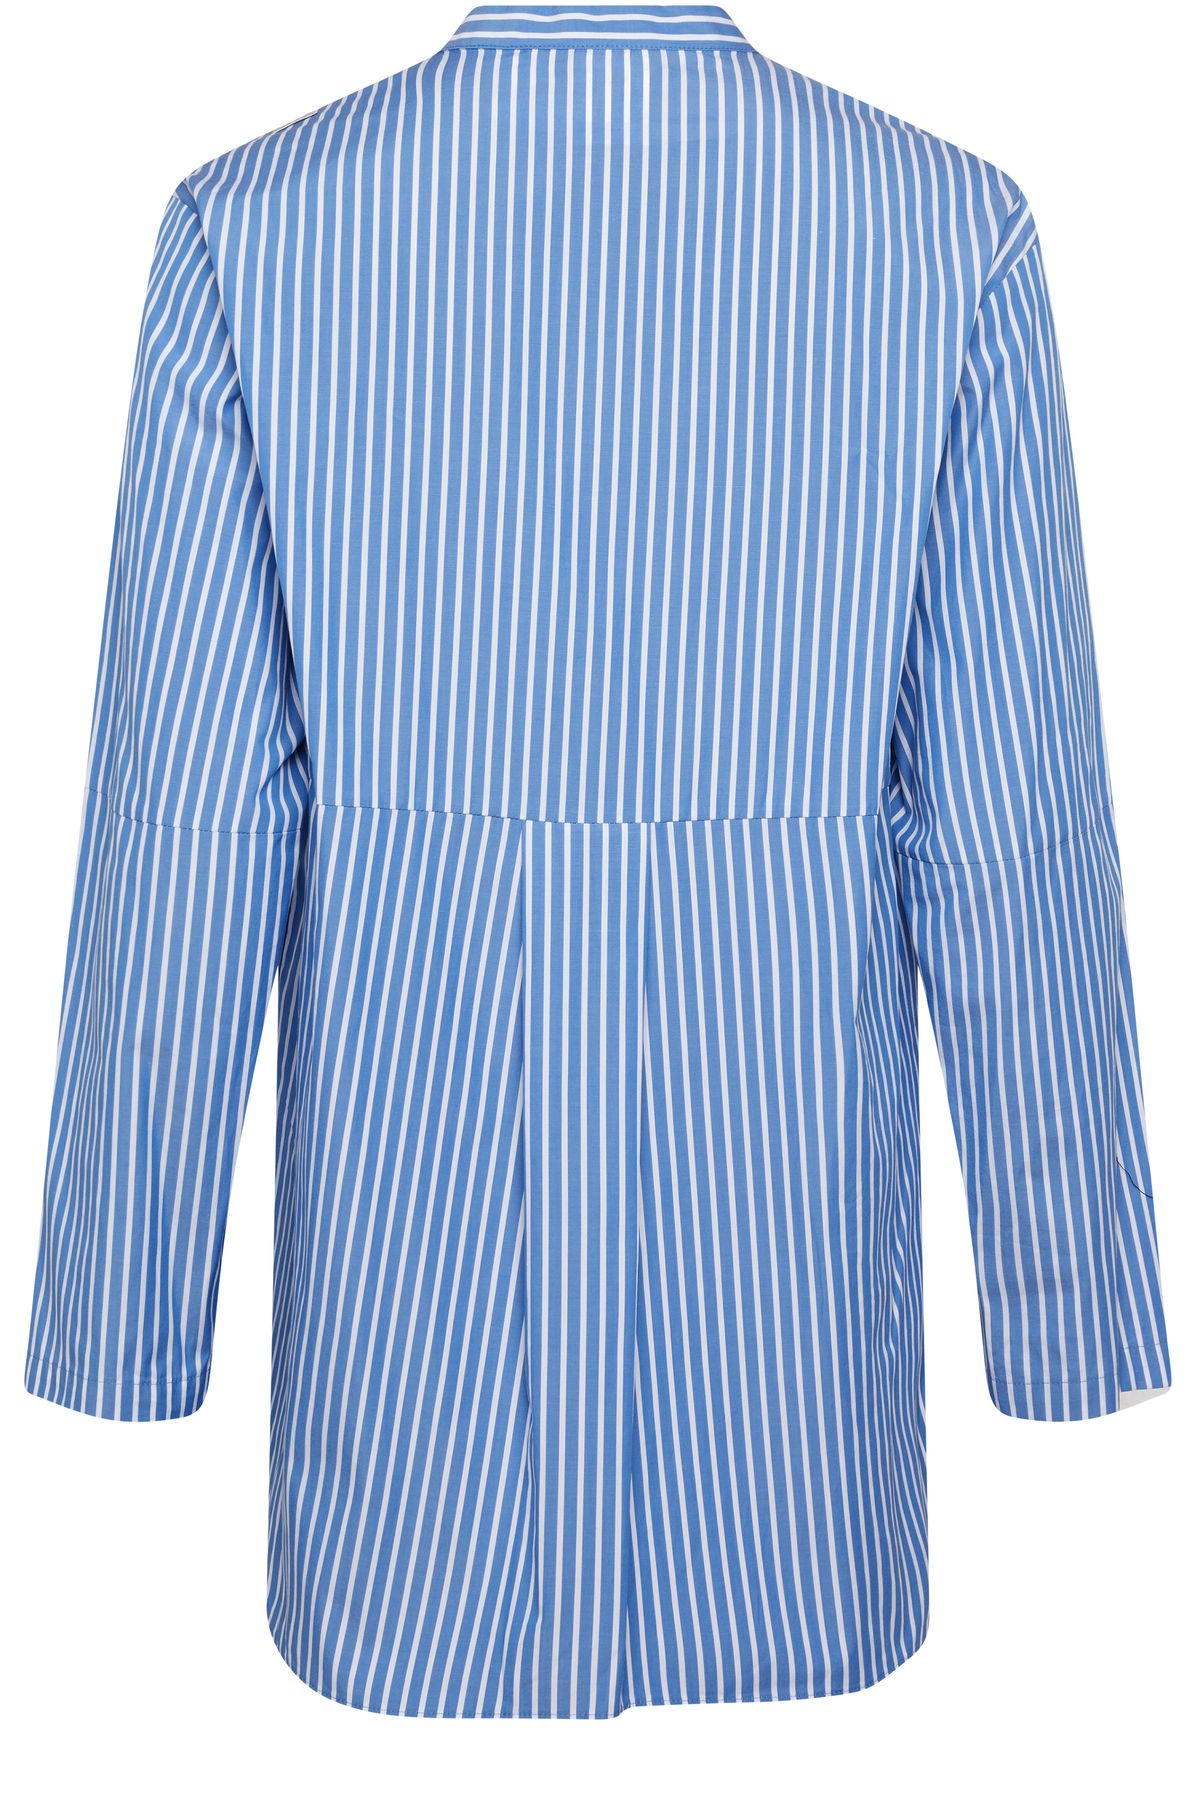 S Max Mara Linda long-sleeved shirt with stripes